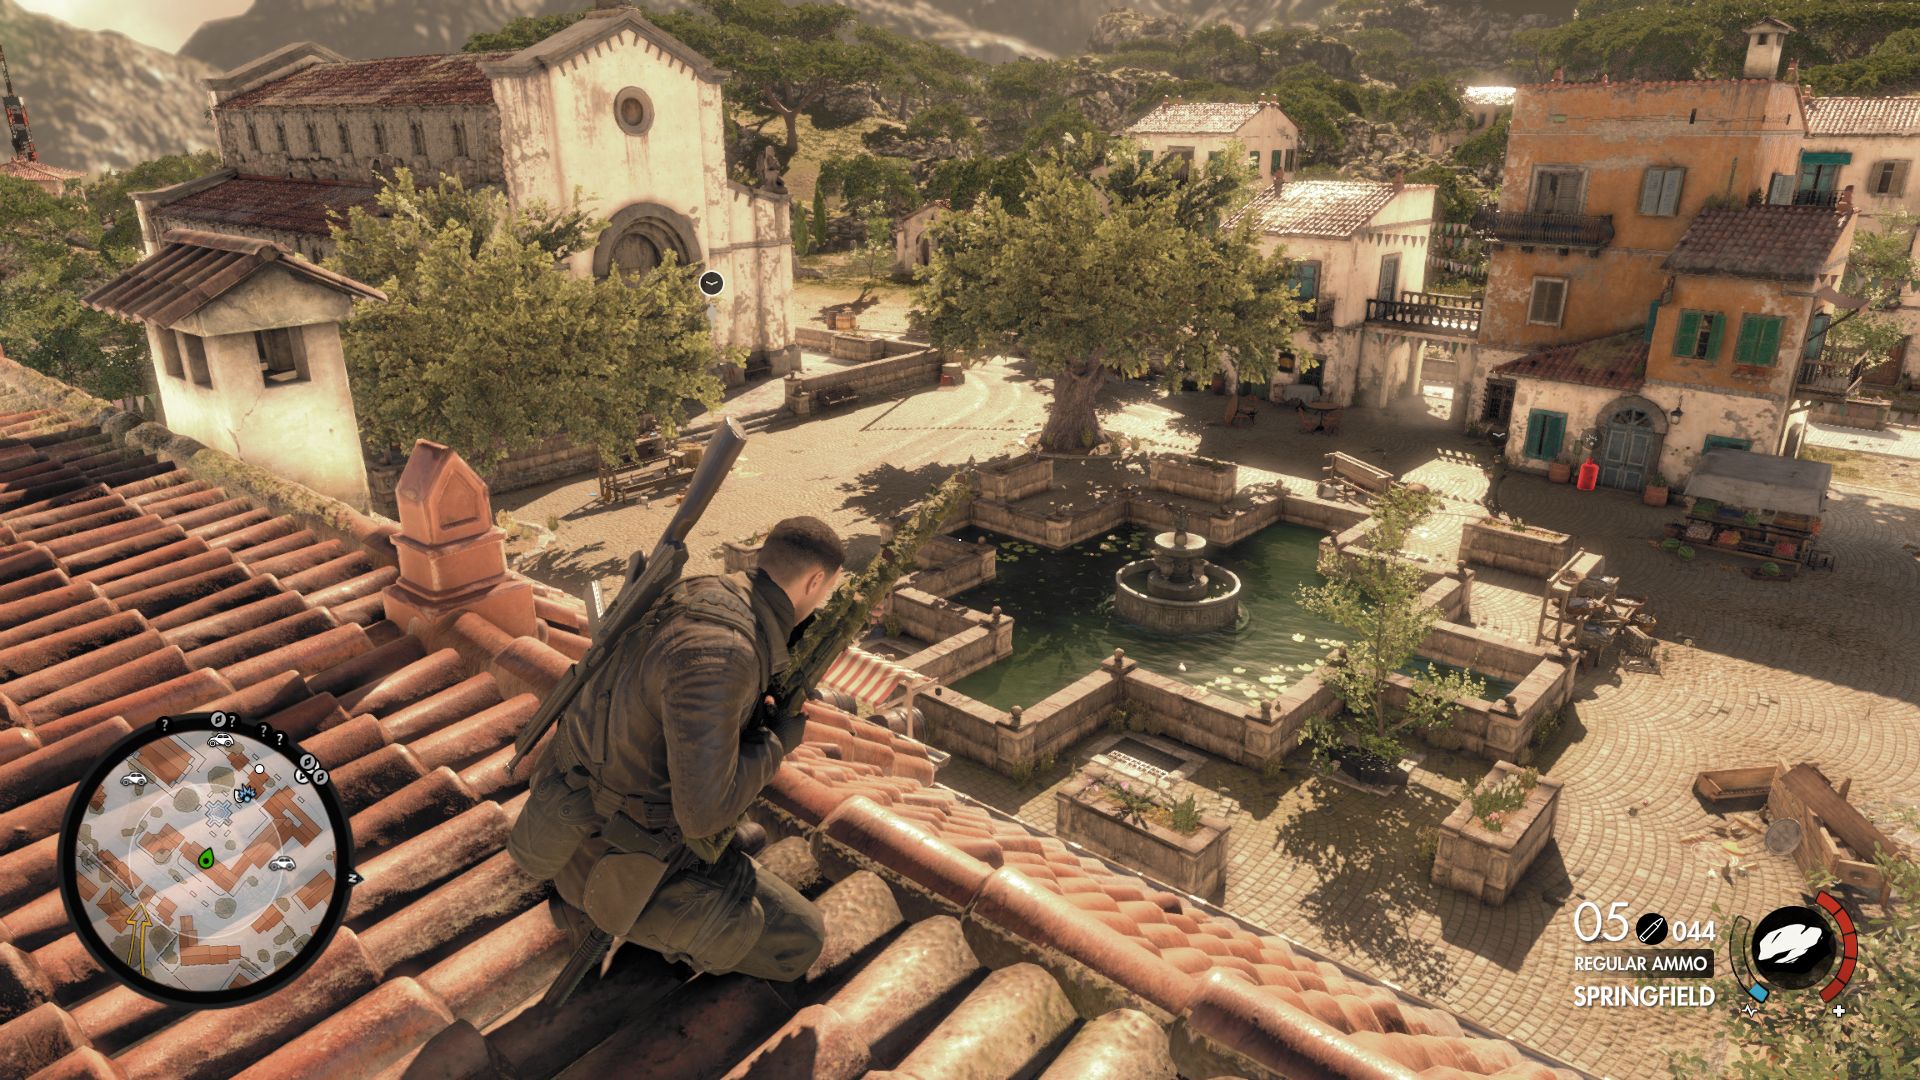 Купить Sniper Elite 4: Italia для PS4 б/у (rus) в наличии СПБ PiterPlay.com